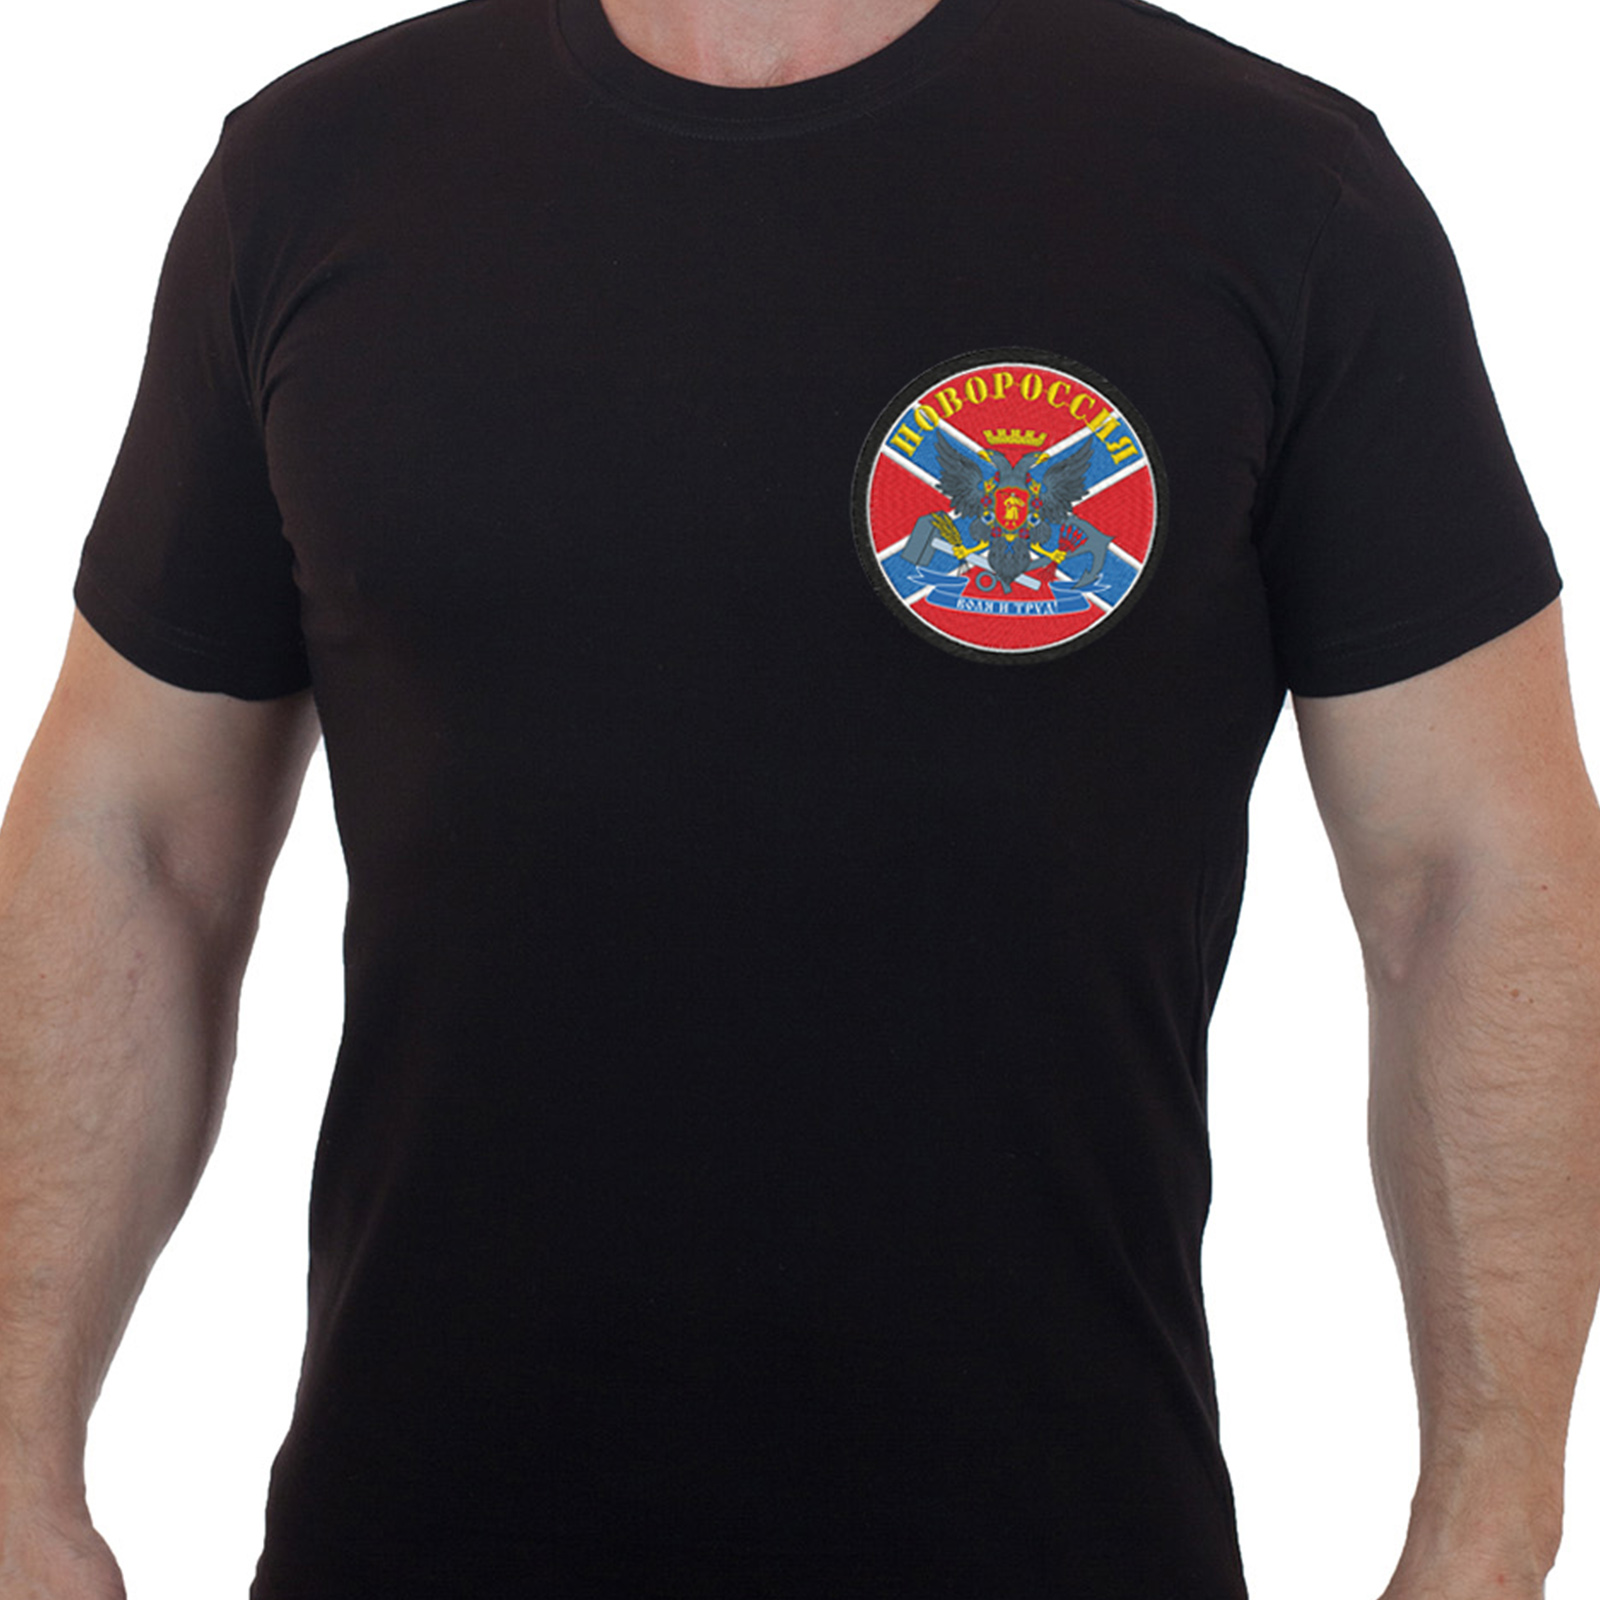 Купить футболку черную с вышивкой Новороссия по выгодной цене